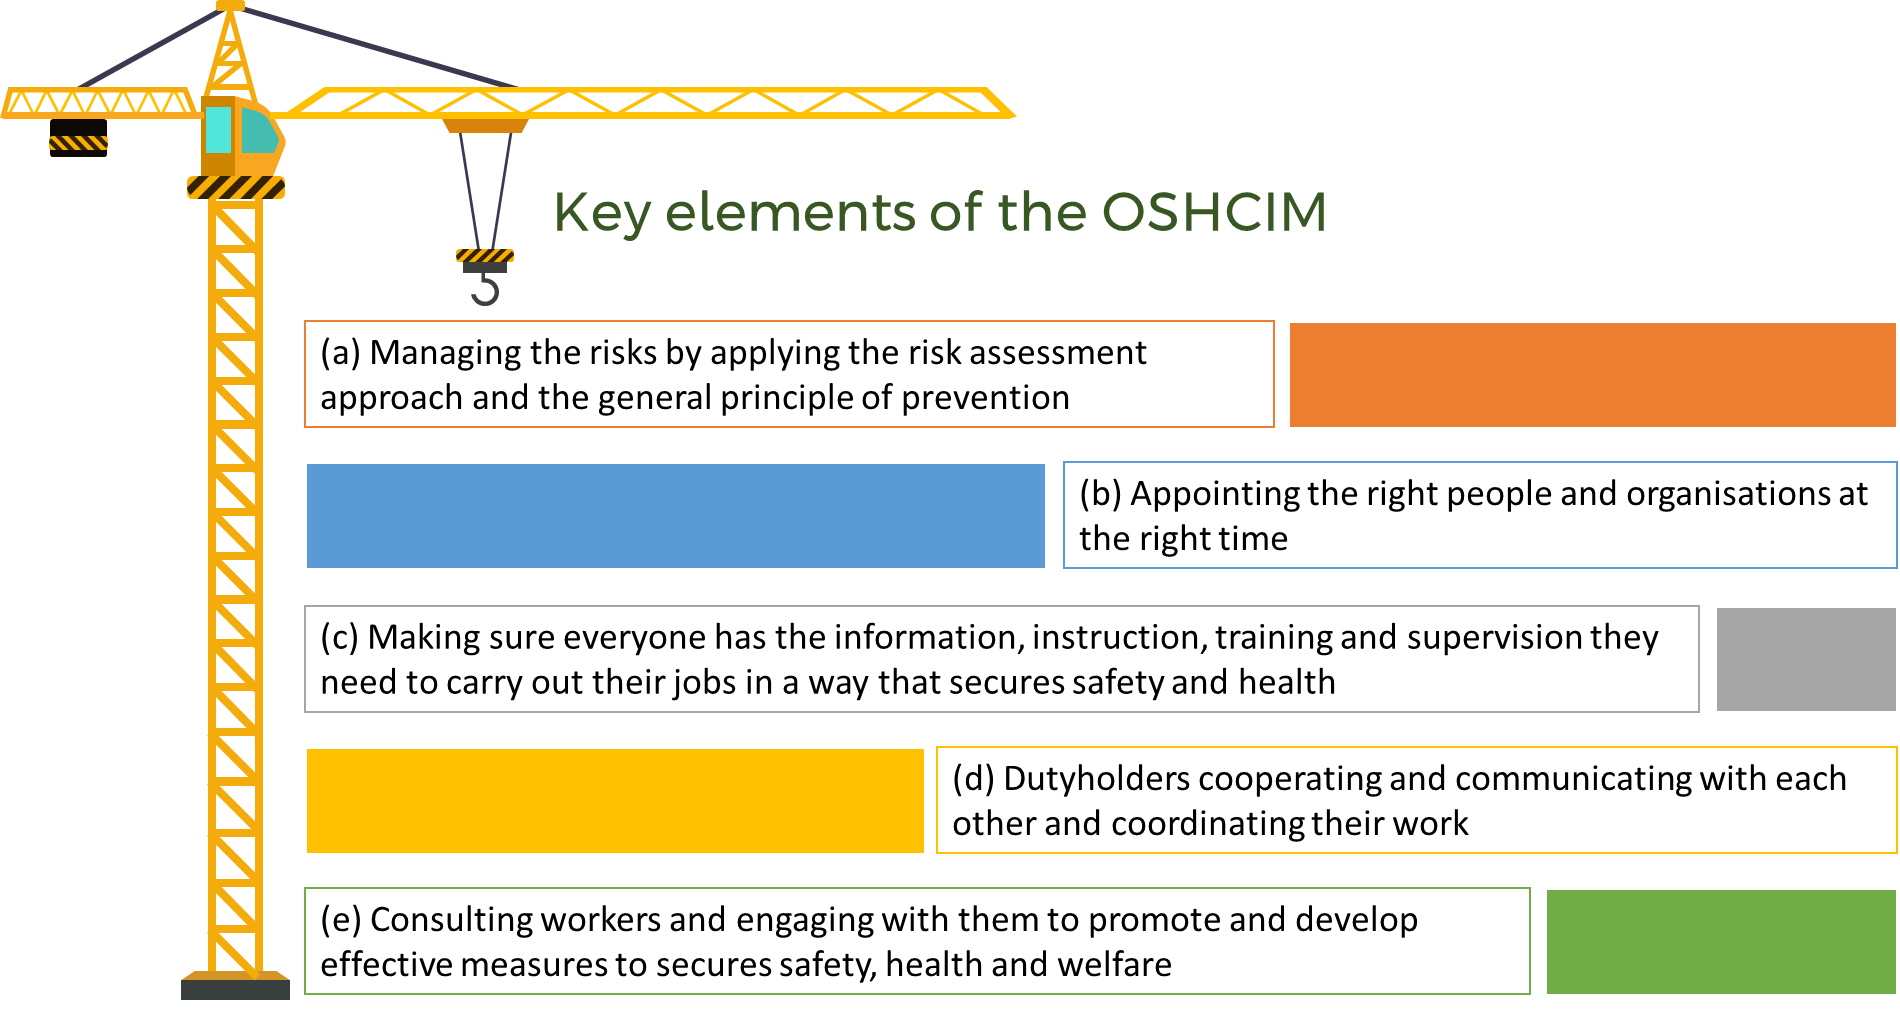 Figure 2 Key elements